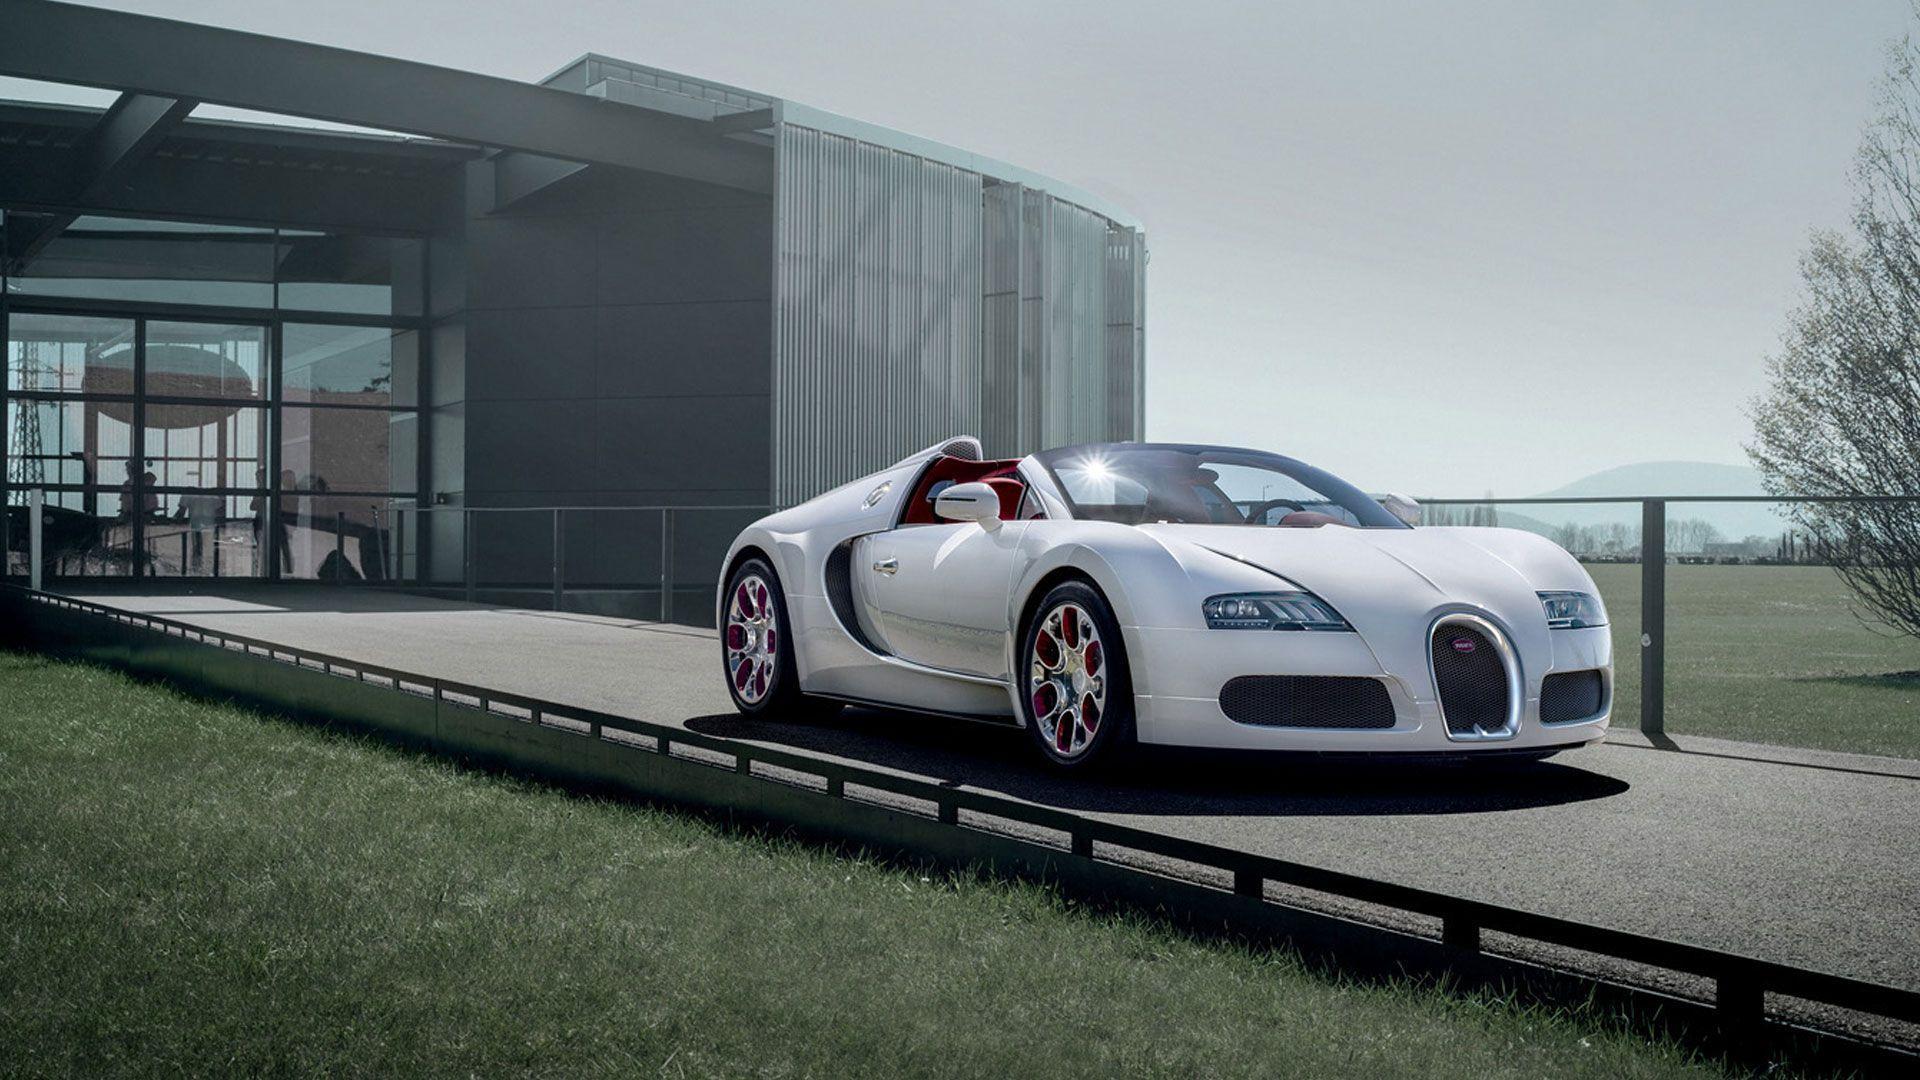 Fonds d&;écran Bugatti Veyron, tous les wallpaper Bugatti Veyron